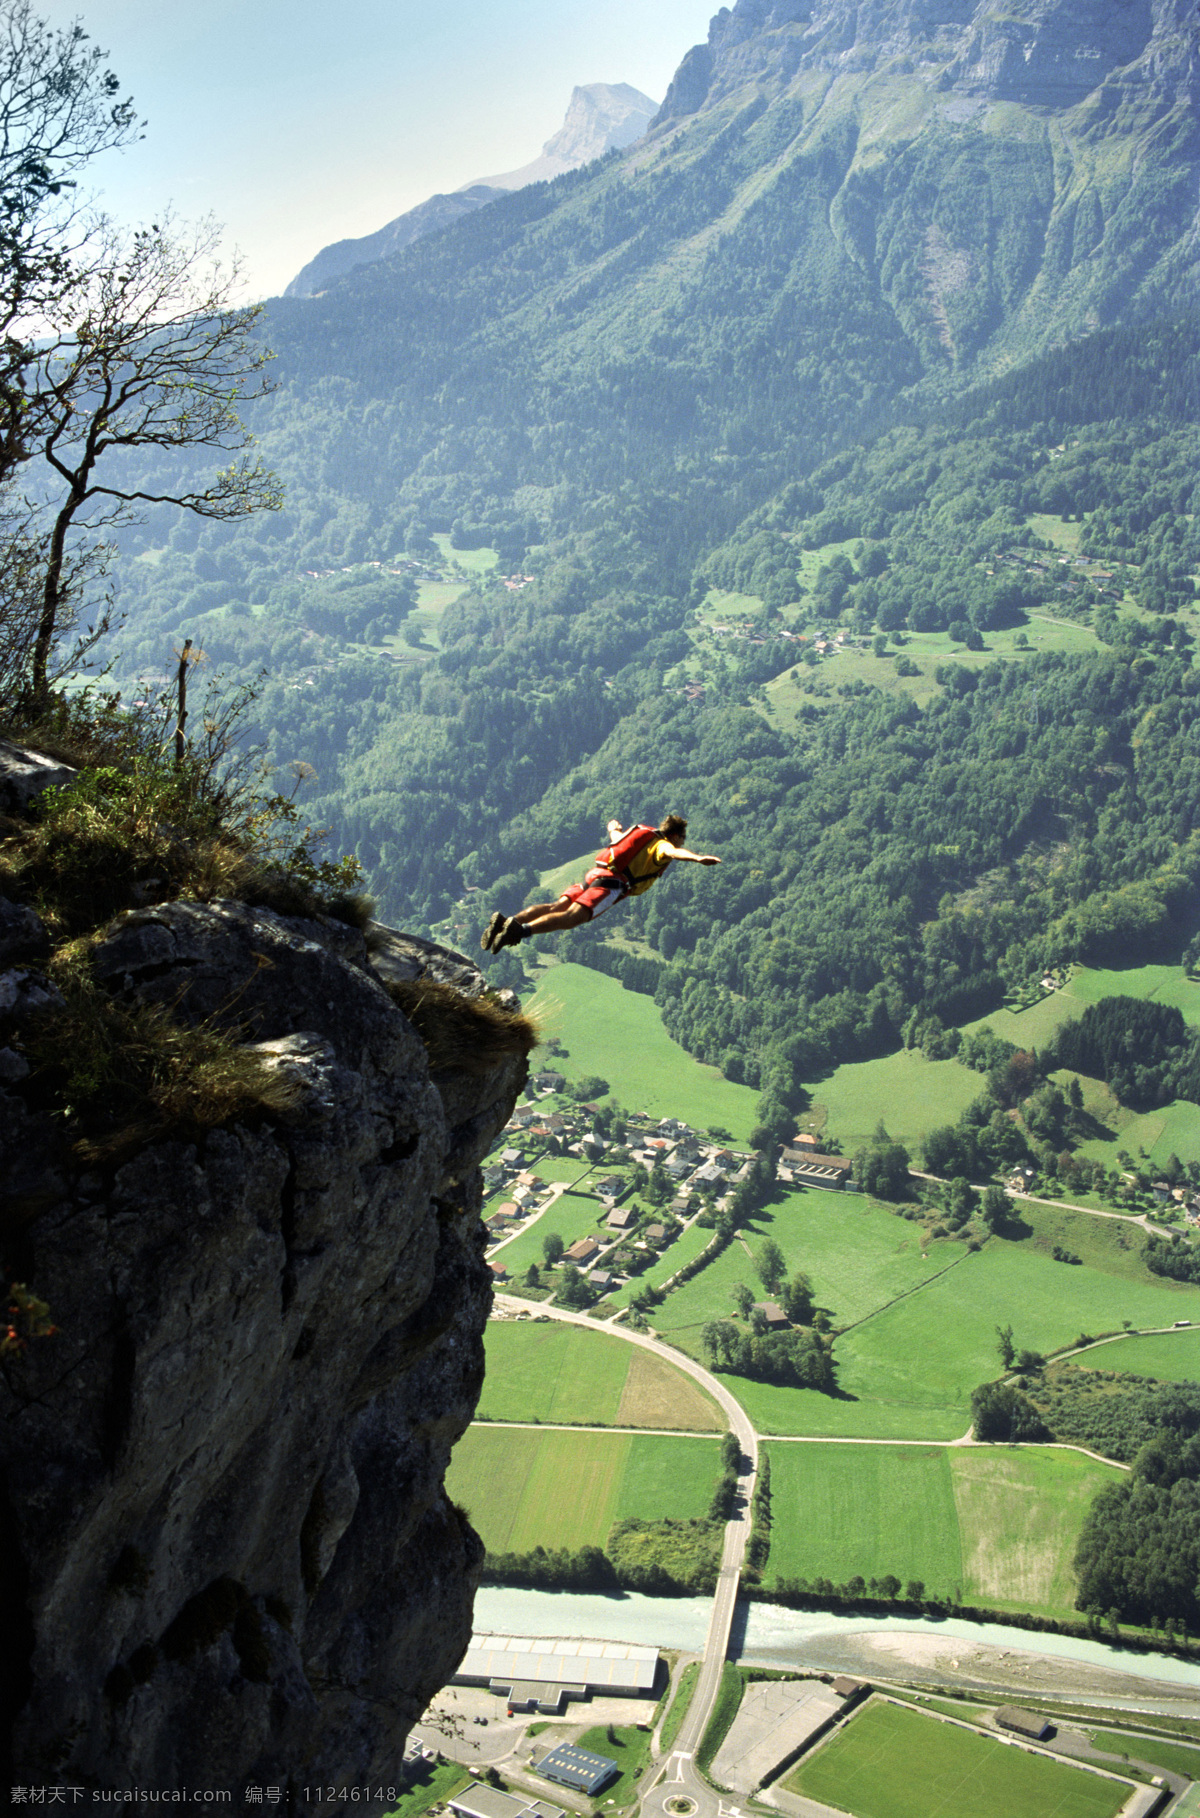 悬崖跳伞 悬崖 降落 降落伞 文化艺术 体育运动 摄影图库